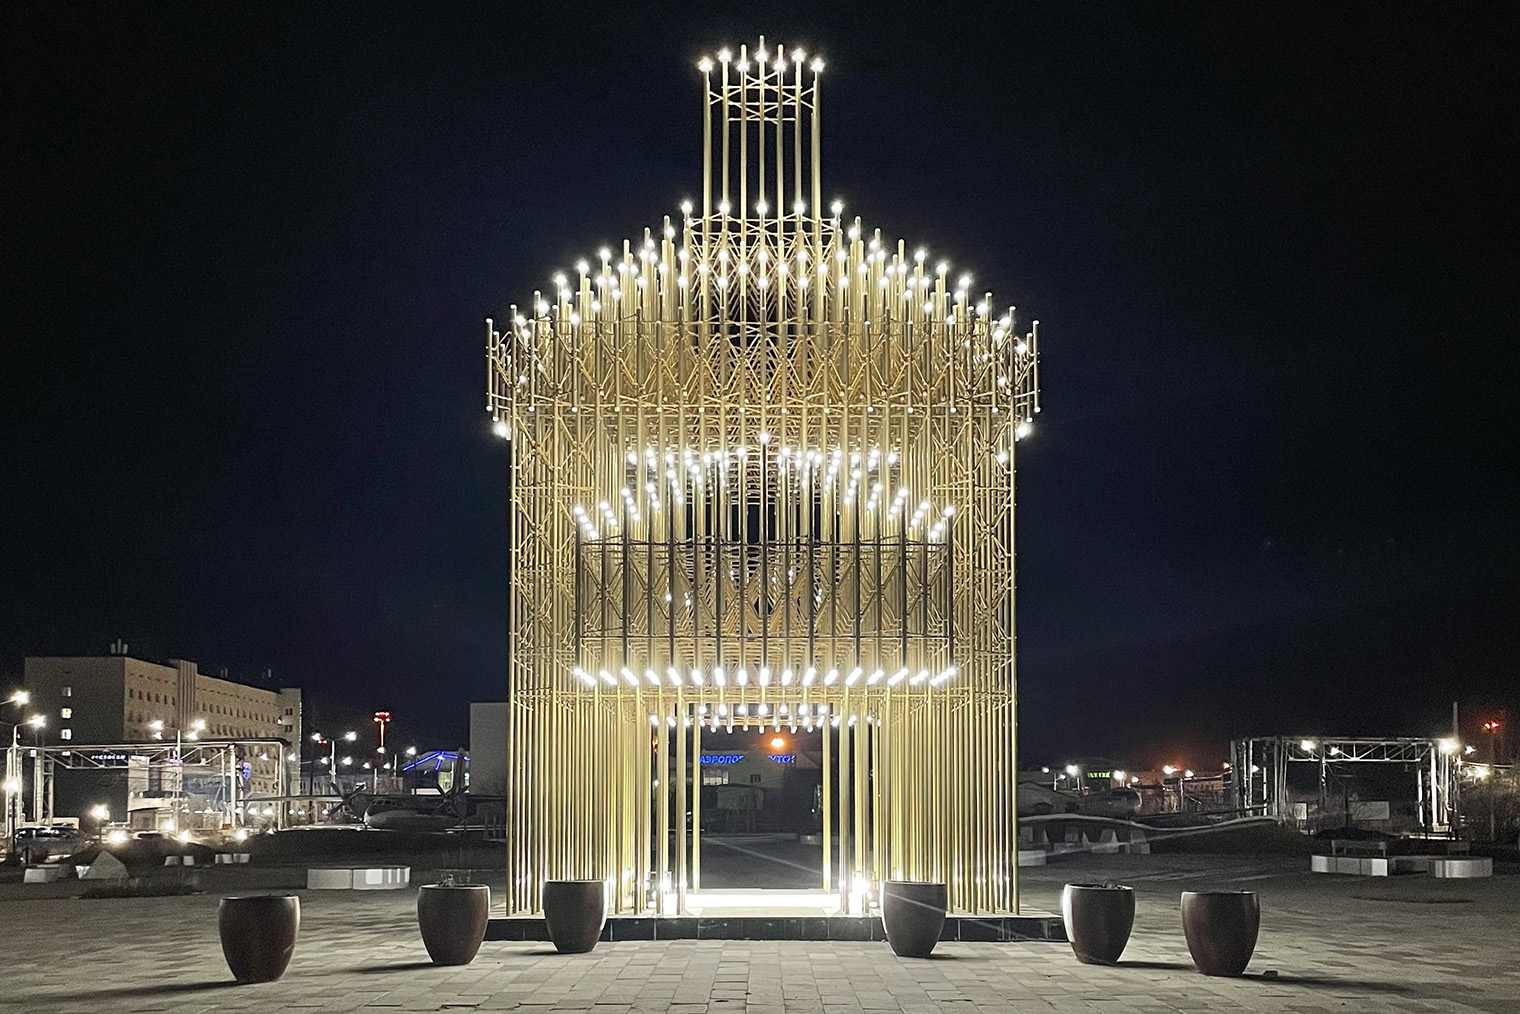 Арт-объект архитектора Геннадия Попова «Ворота Якутска», созданный из светящихся латунных труб, — современная интерпретация башни Ленского острога